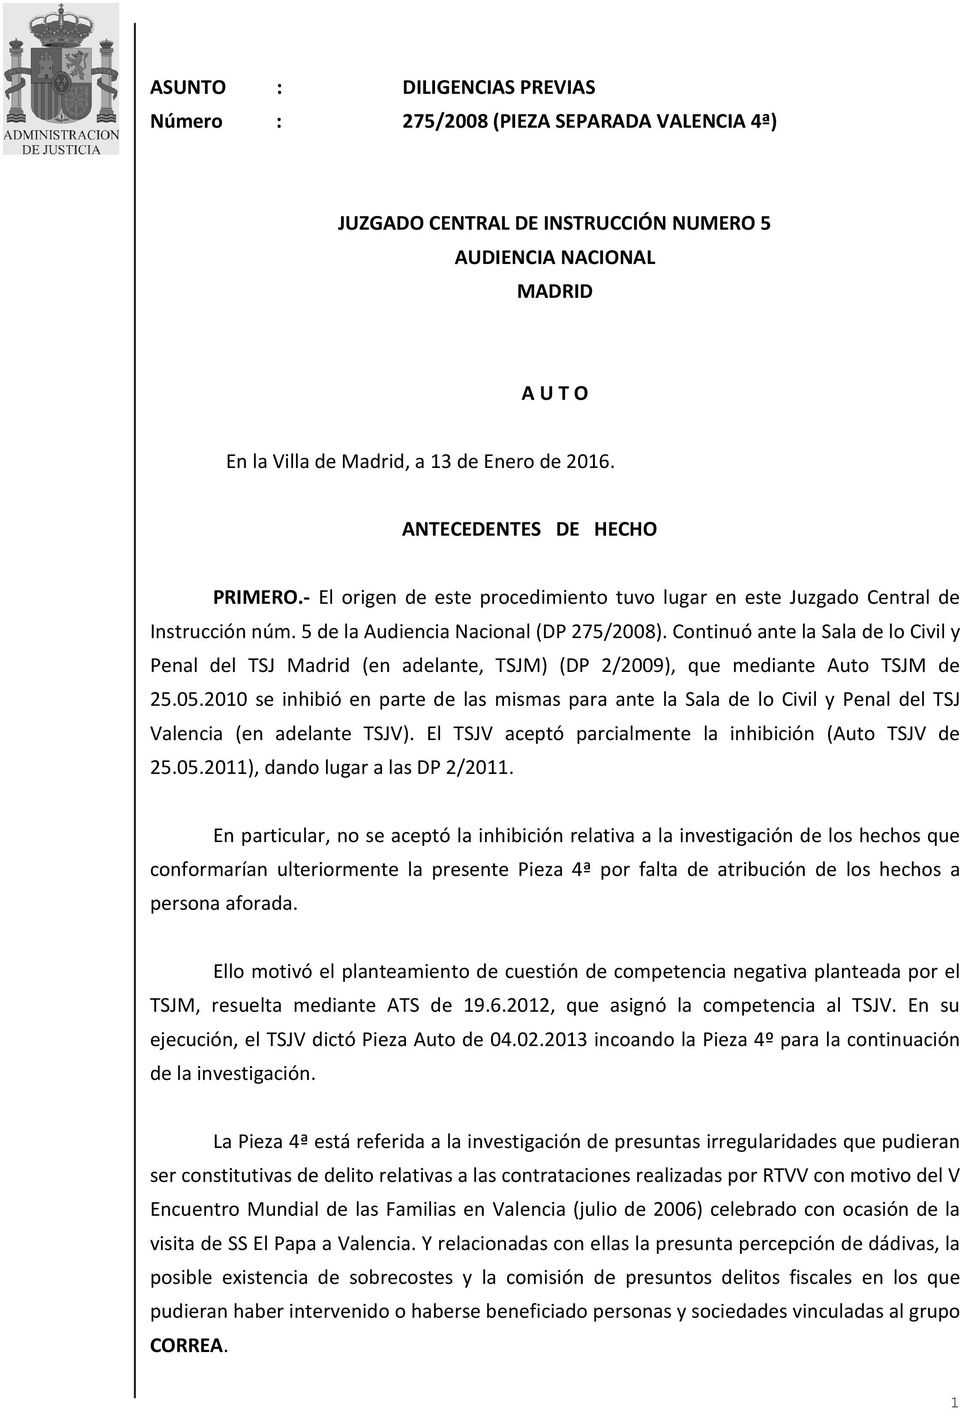 Continuó ante la Sala de lo Civil y Penal del TSJ Madrid (en adelante, TSJM) (DP 2/2009), que mediante Auto TSJM de 25.05.